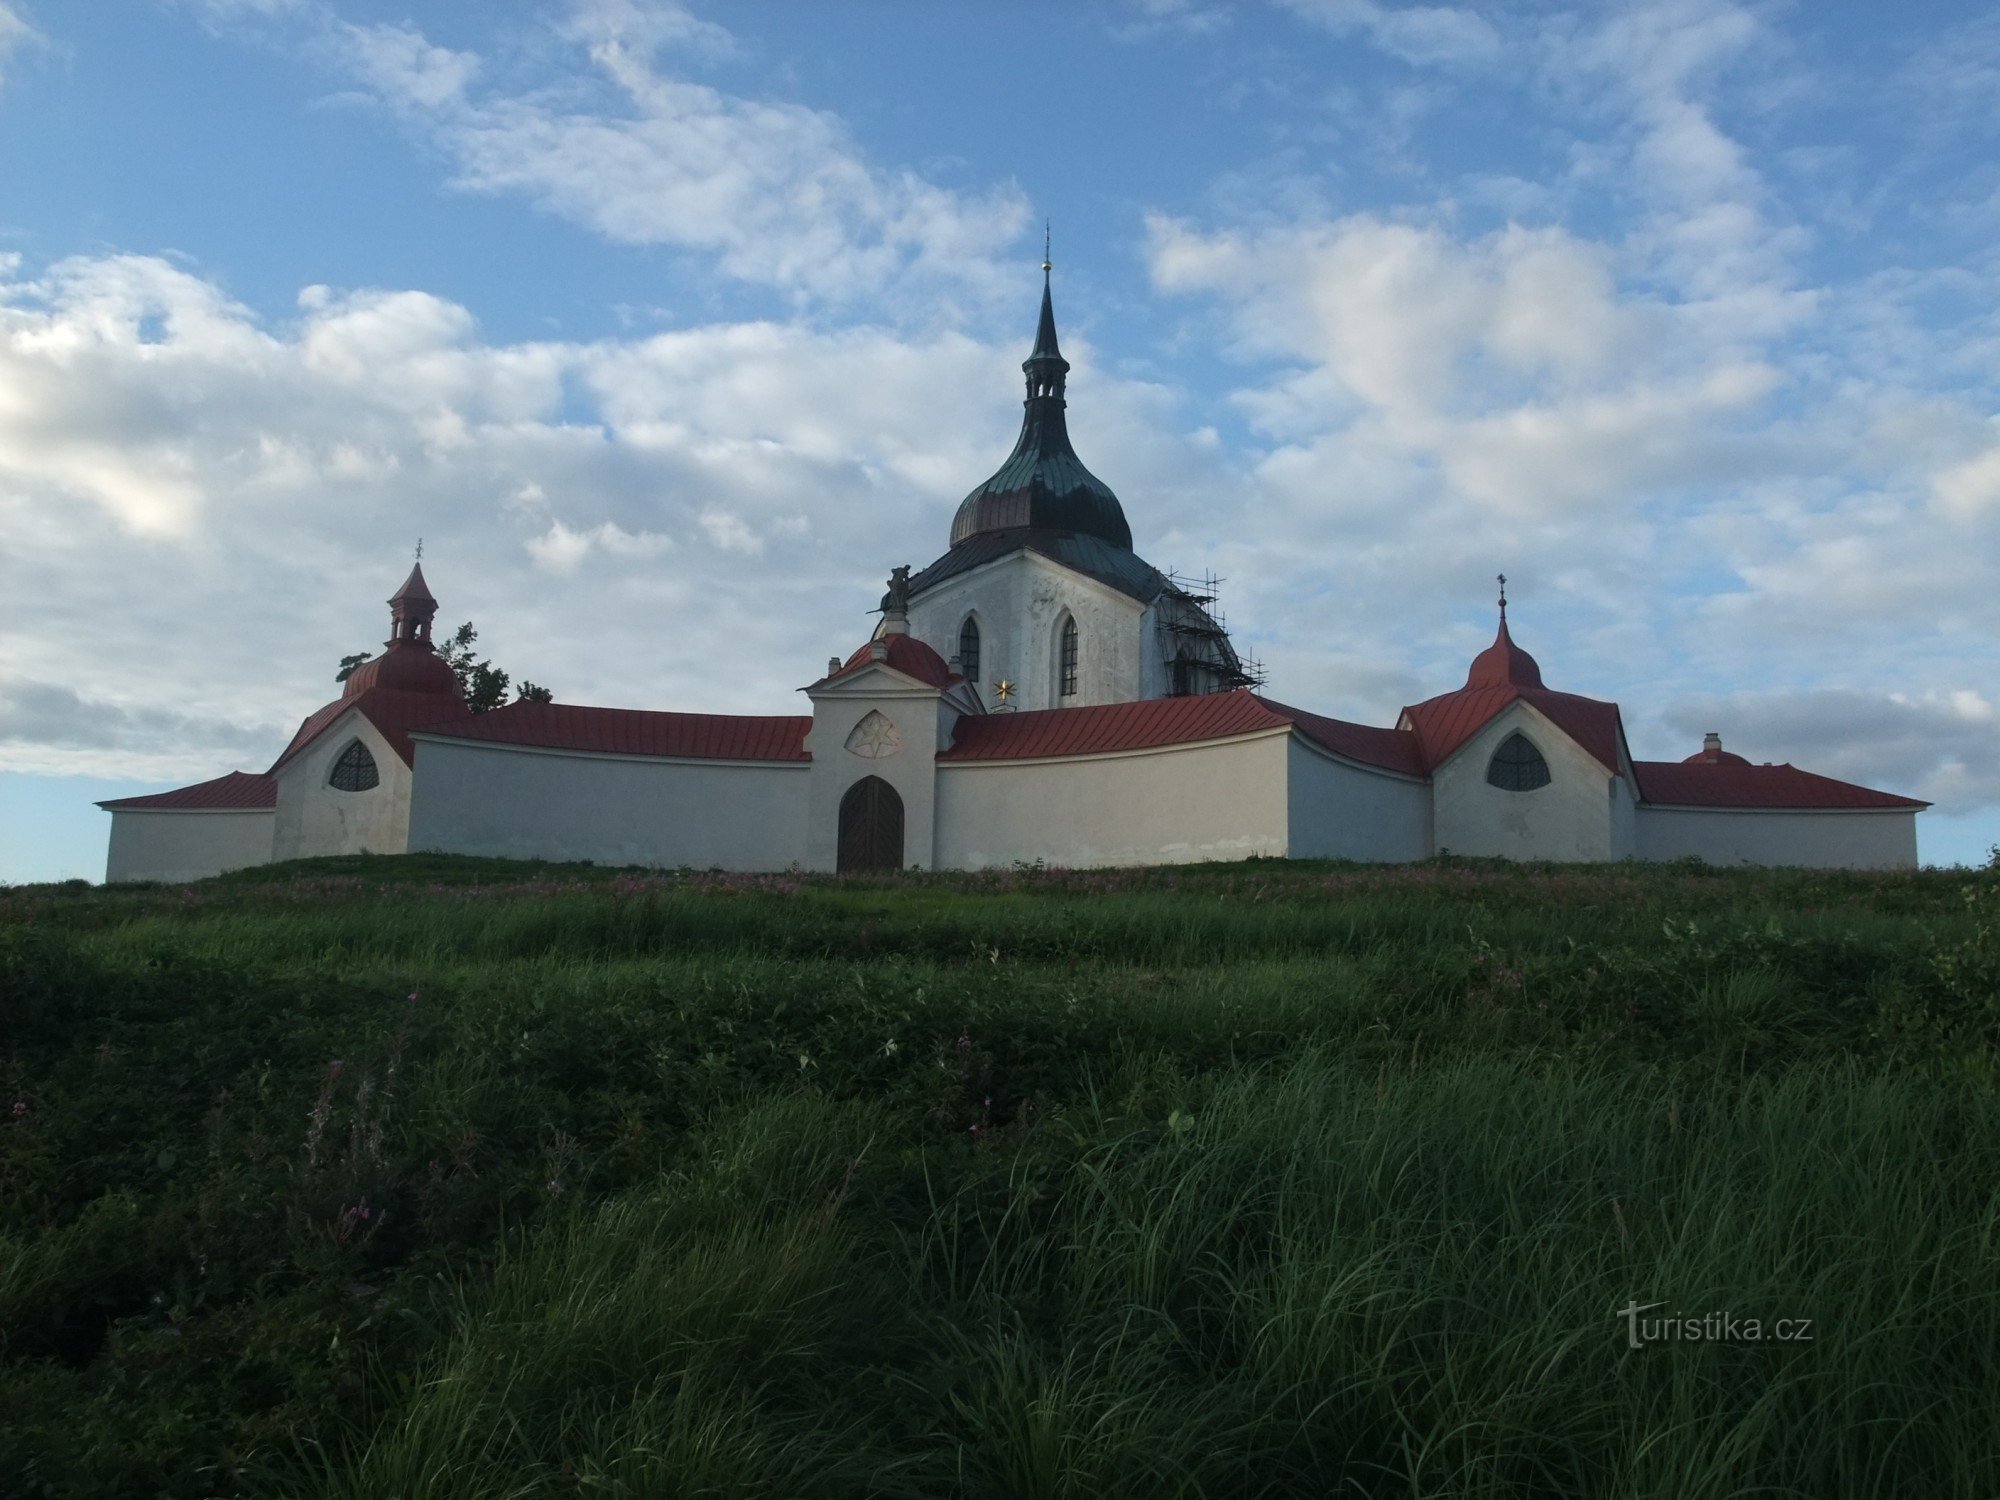 Паломническая церковь св. Ян Непомуцкий